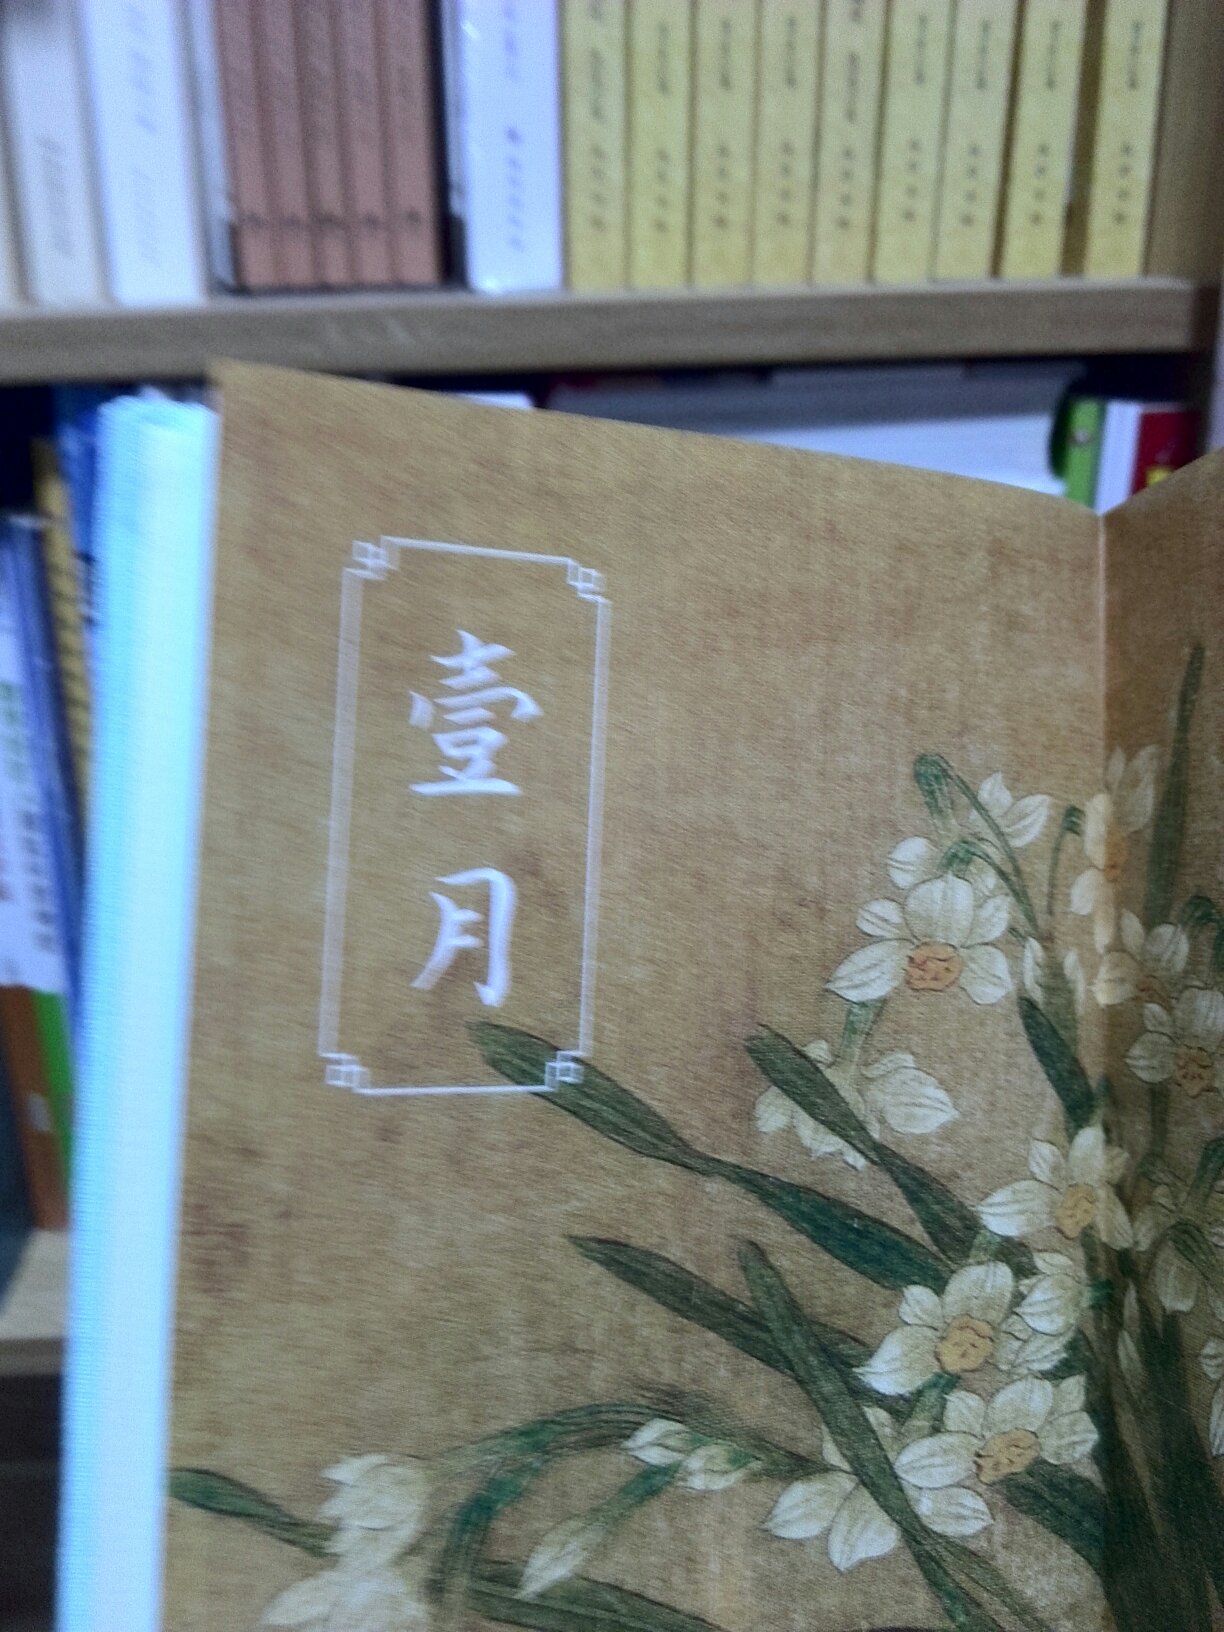 这台日历装潢还是很精美的，纸张质量也是很好的，文化乞息很浓厚。